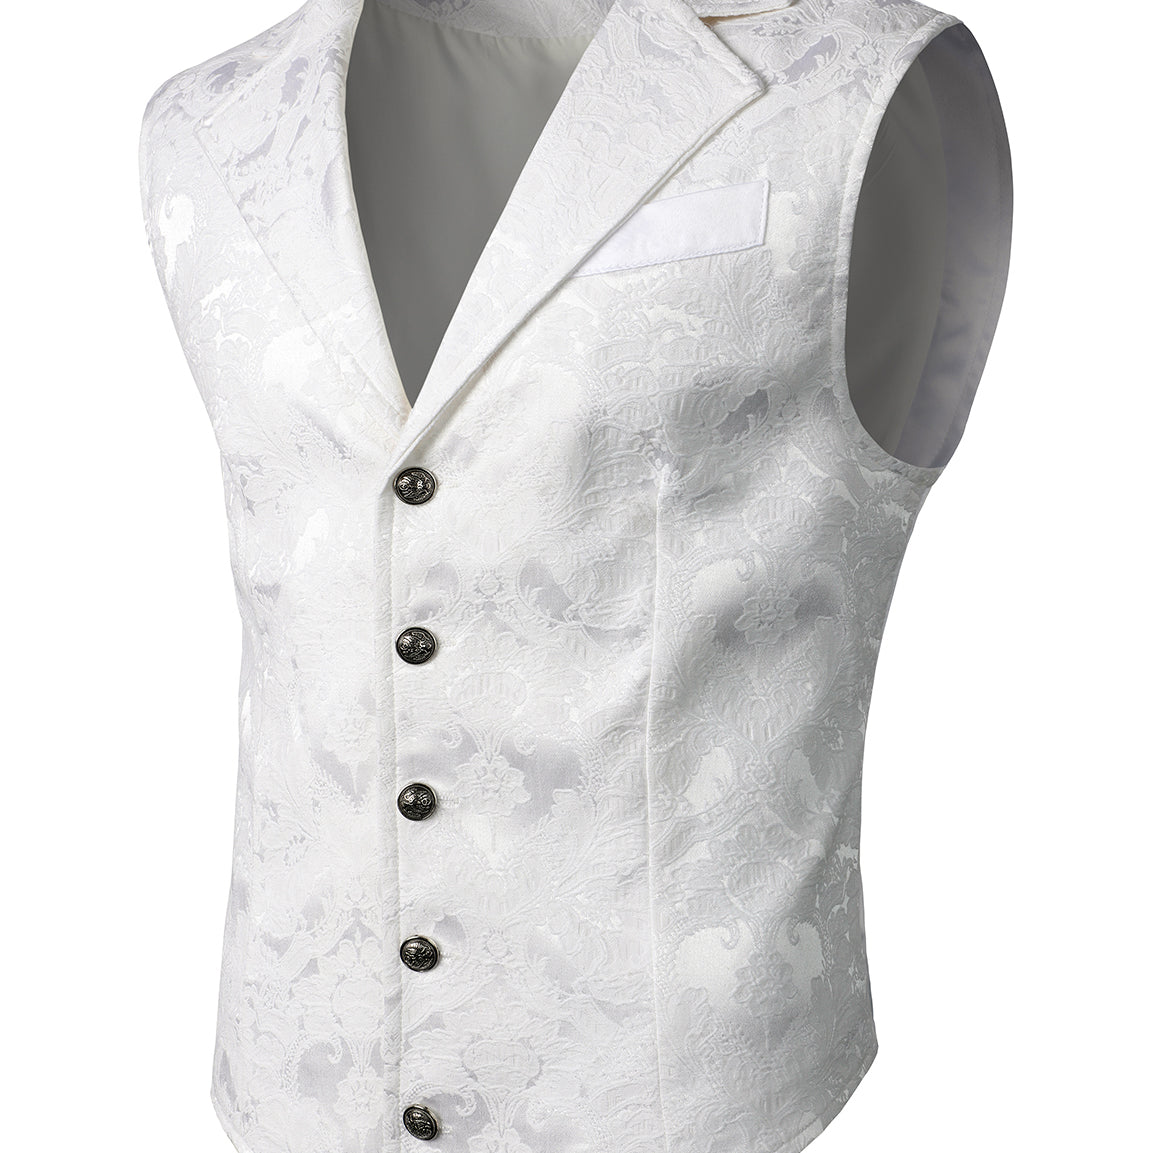 Men's Victorian Suit Vest Steampunk Gothic Waistcoat Vintage Paisley Floral Navy Vest